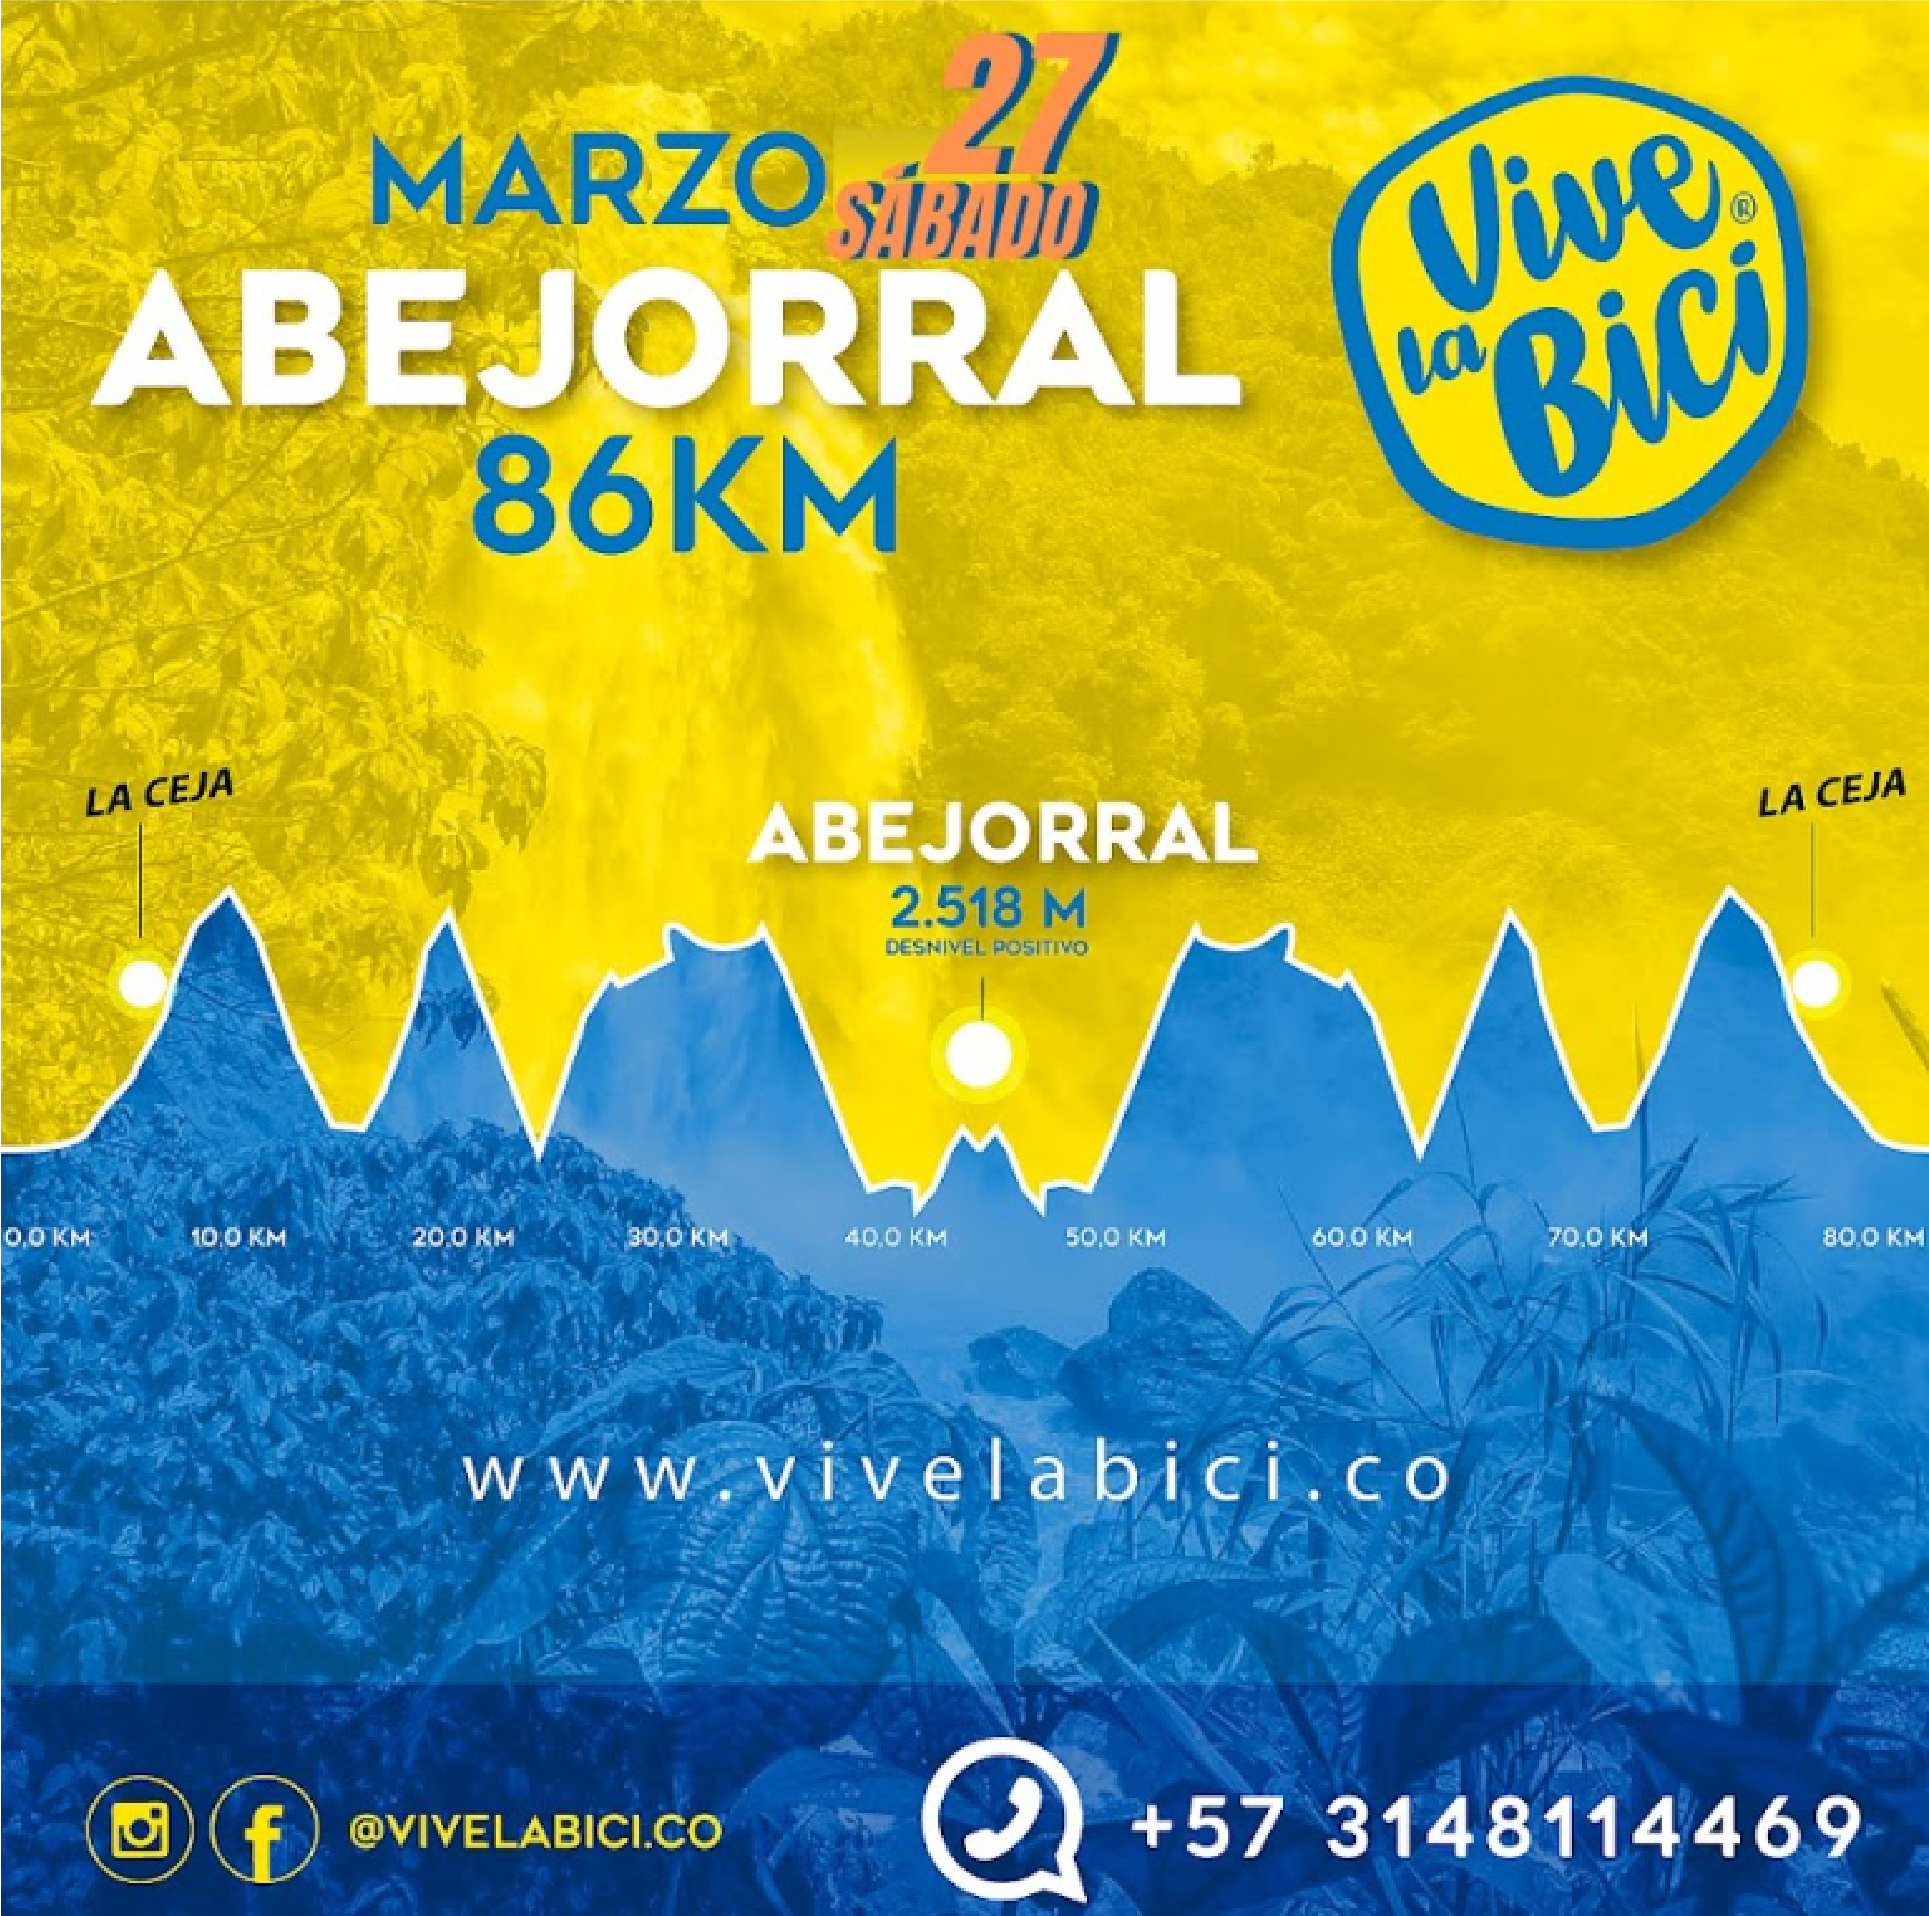 Publicación promocional de Vive la Bici en Abejorral